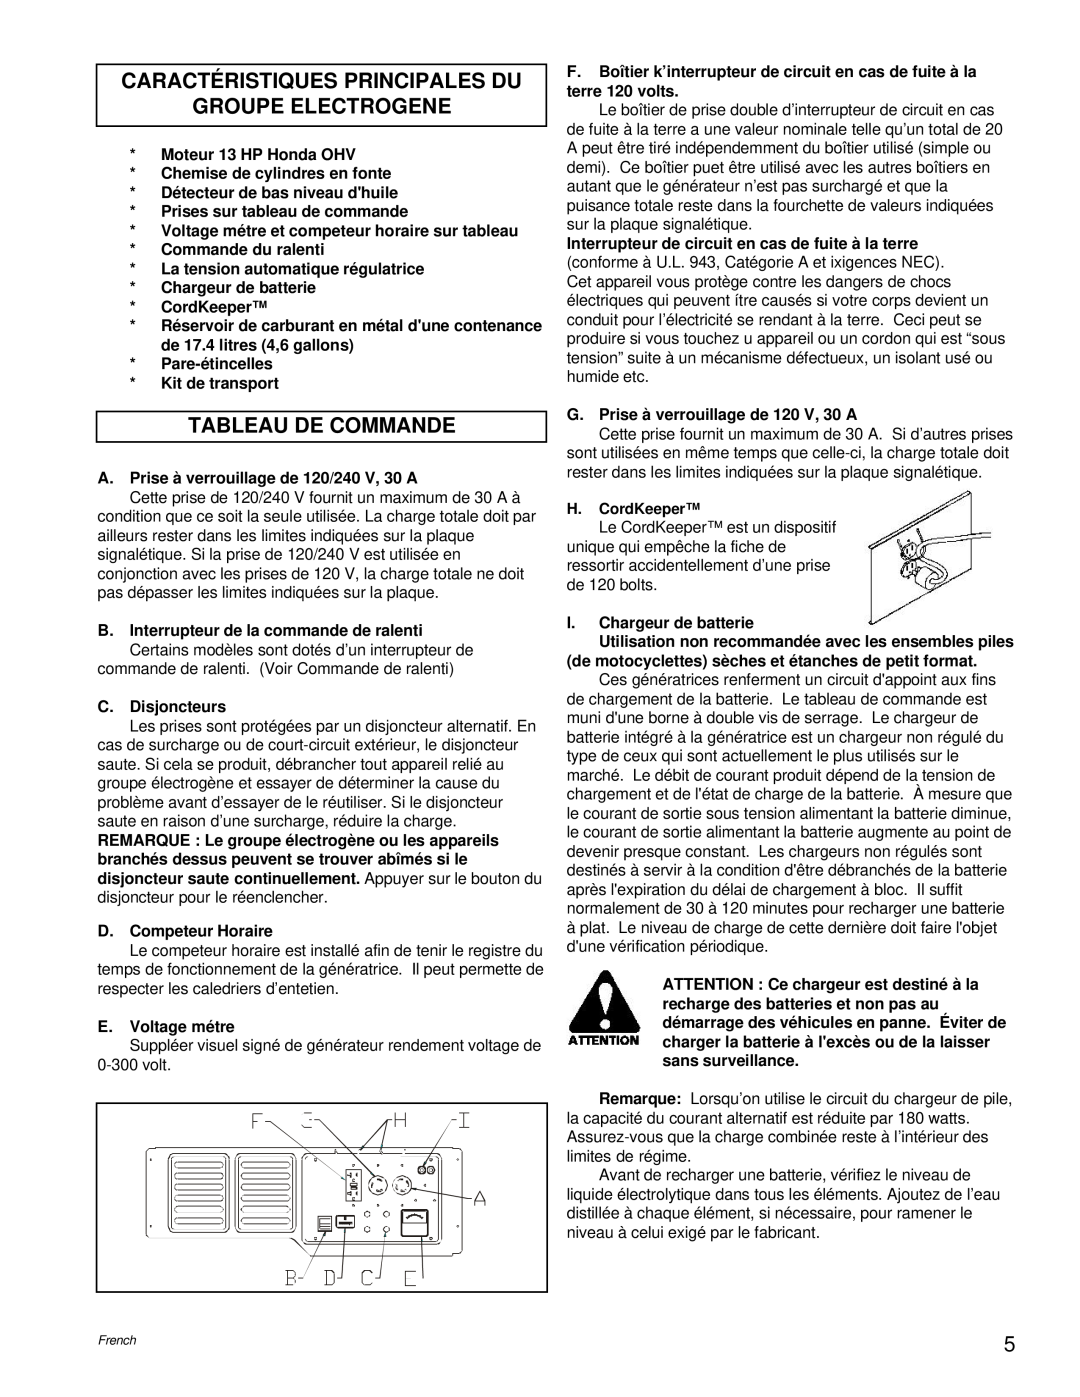 Powermate PM0496504.18 manual Caractéristiques Principales Du Groupe Electrogene, Tableau De Commande 